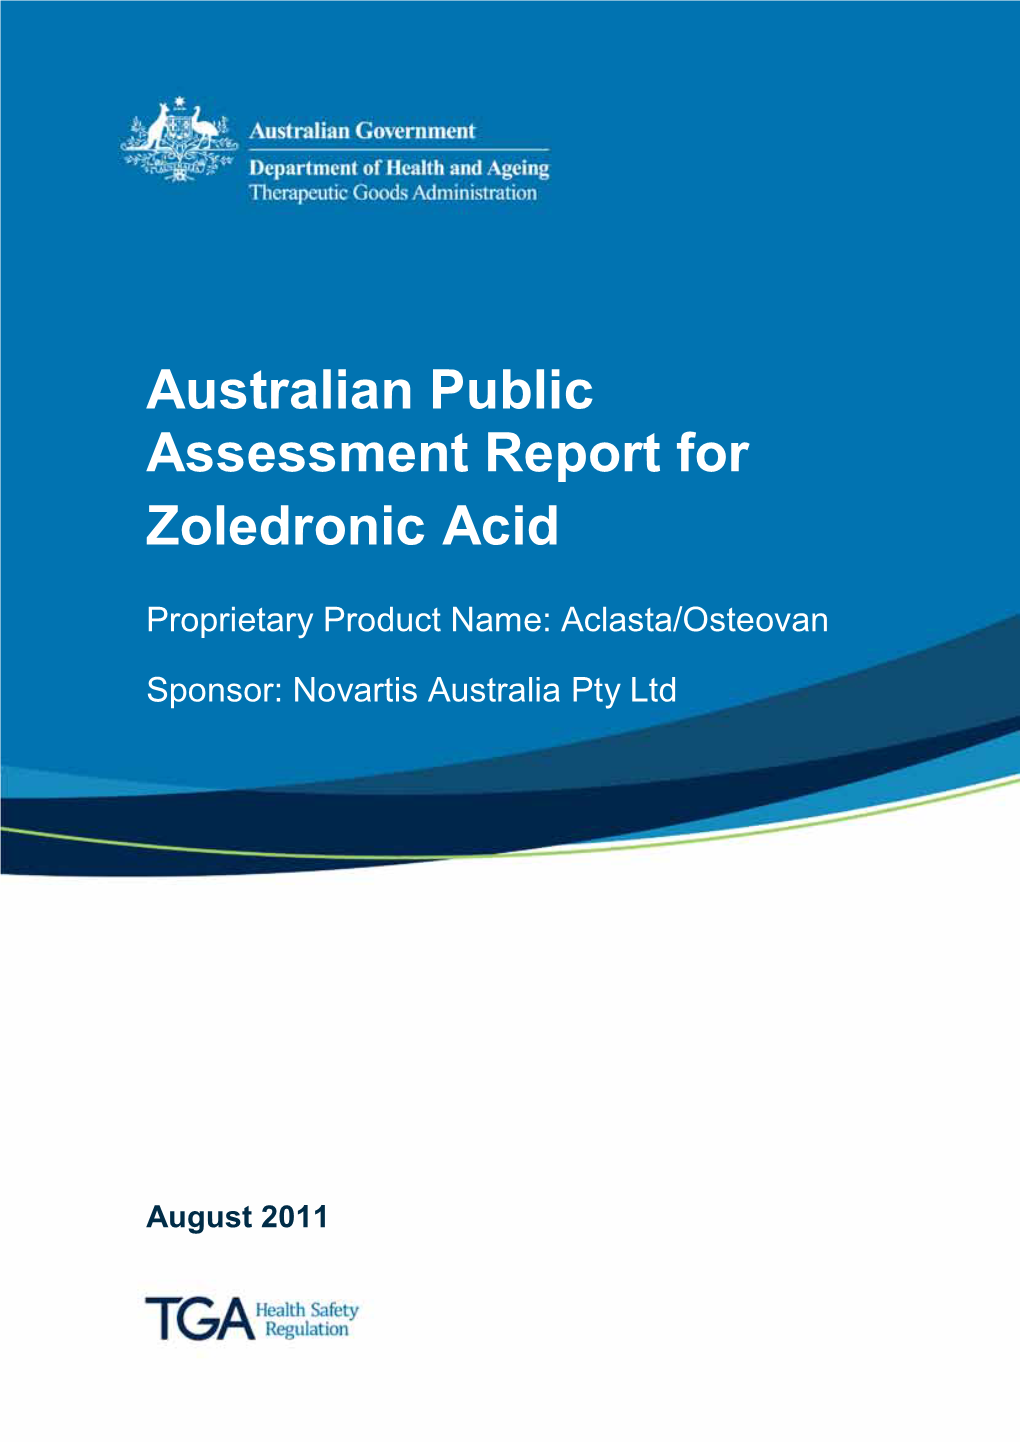 Australian Public Assessment Report for Zoledronic Acid